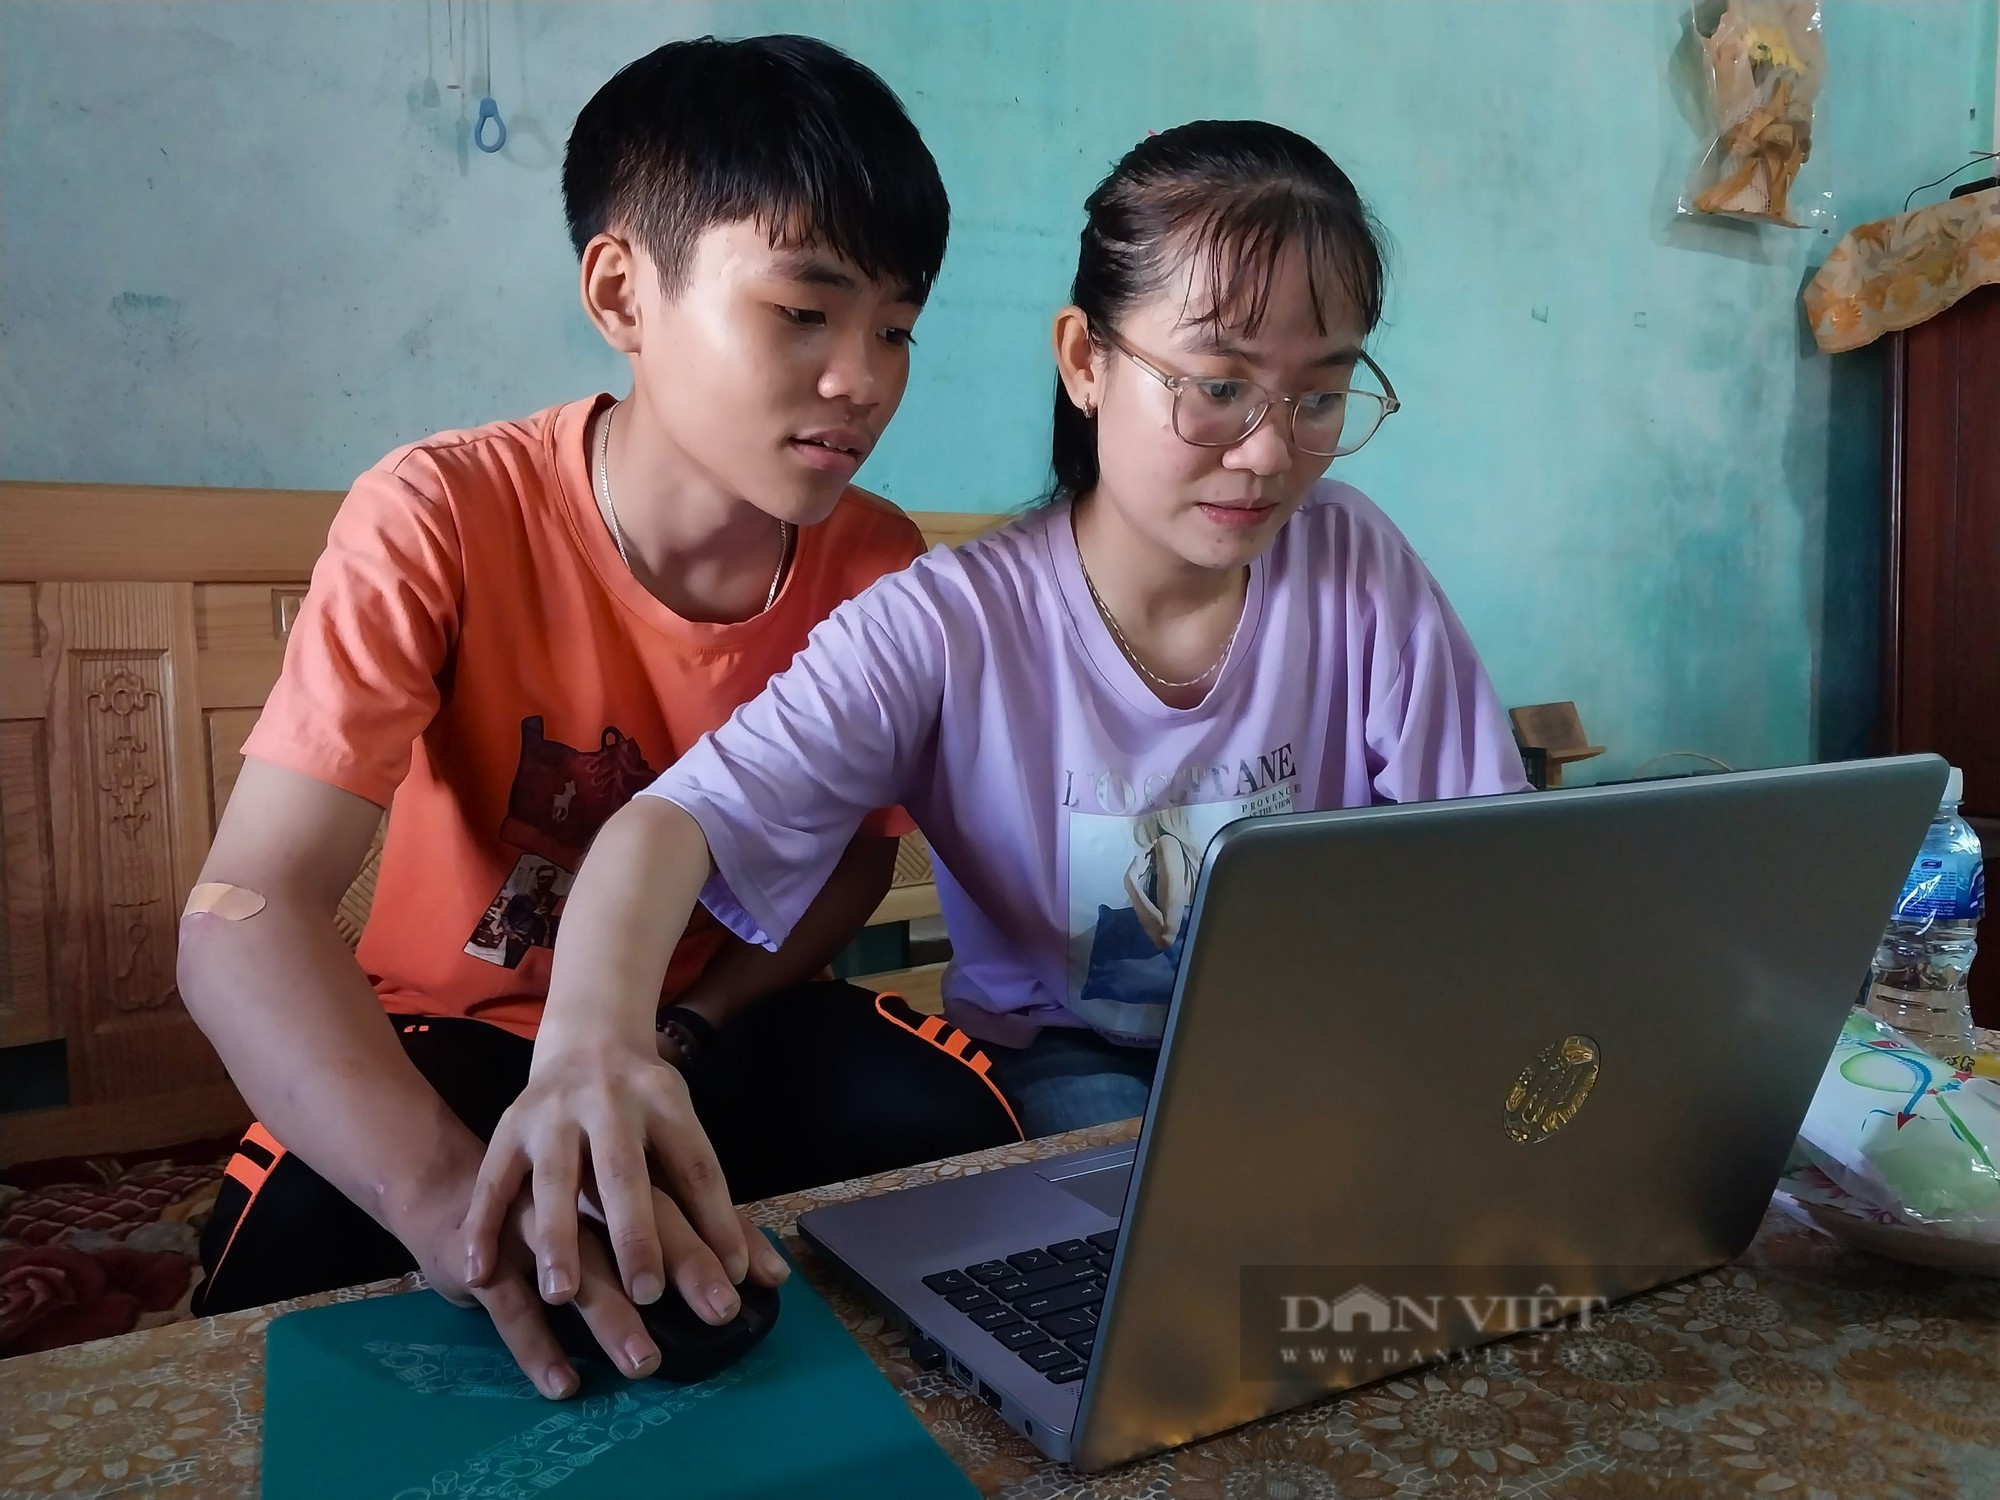 Báo Nông Thôn Ngày Nay/ điện tử Dân Việt tặng quà cho học sinh nghèo học giỏi ở Ninh Thuận - Ảnh 3.